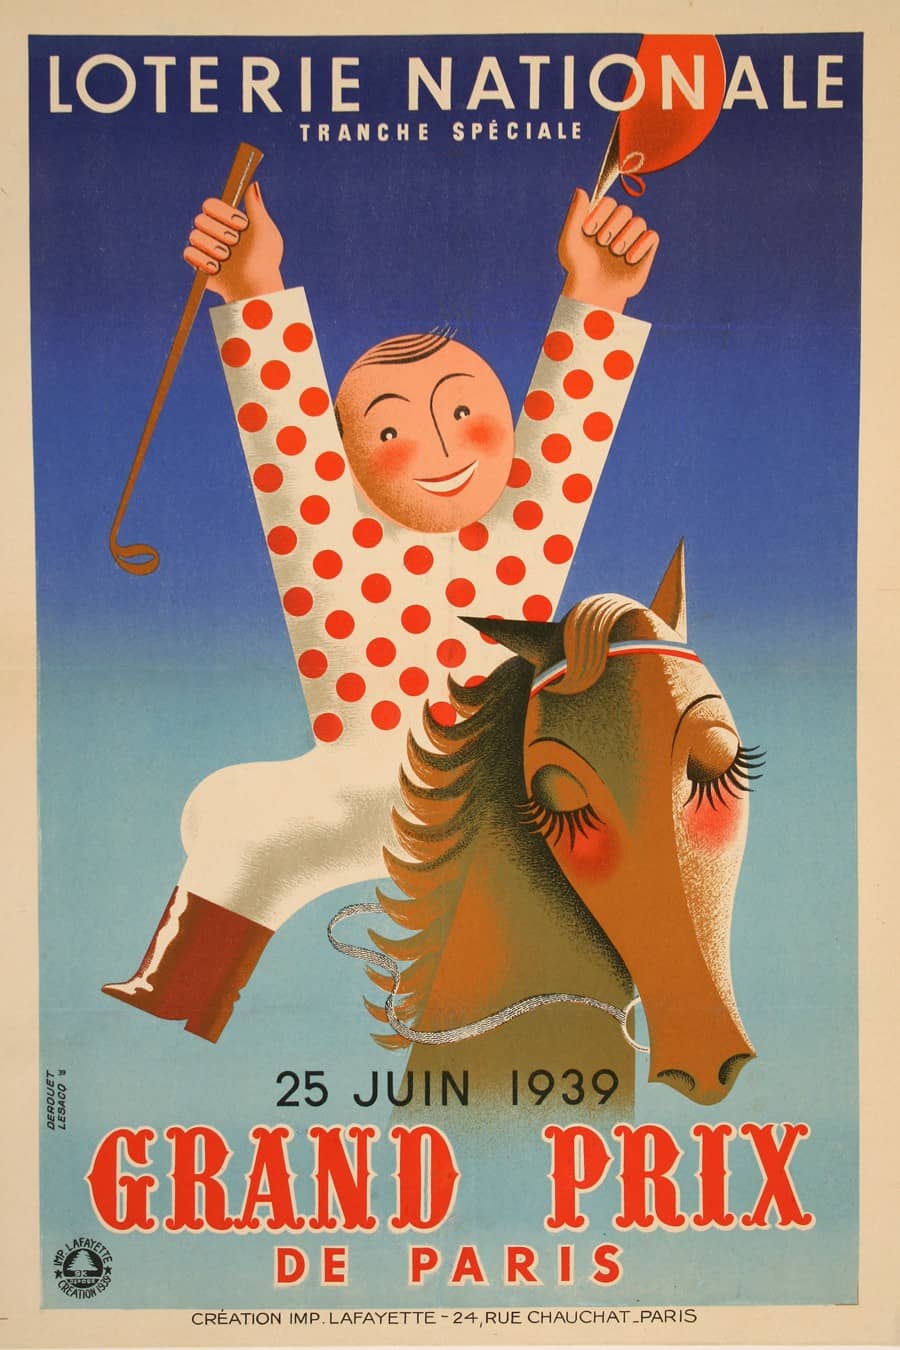 Loterie National French Poster by Derouet Lesacq - Grand Prix de Paris 1939